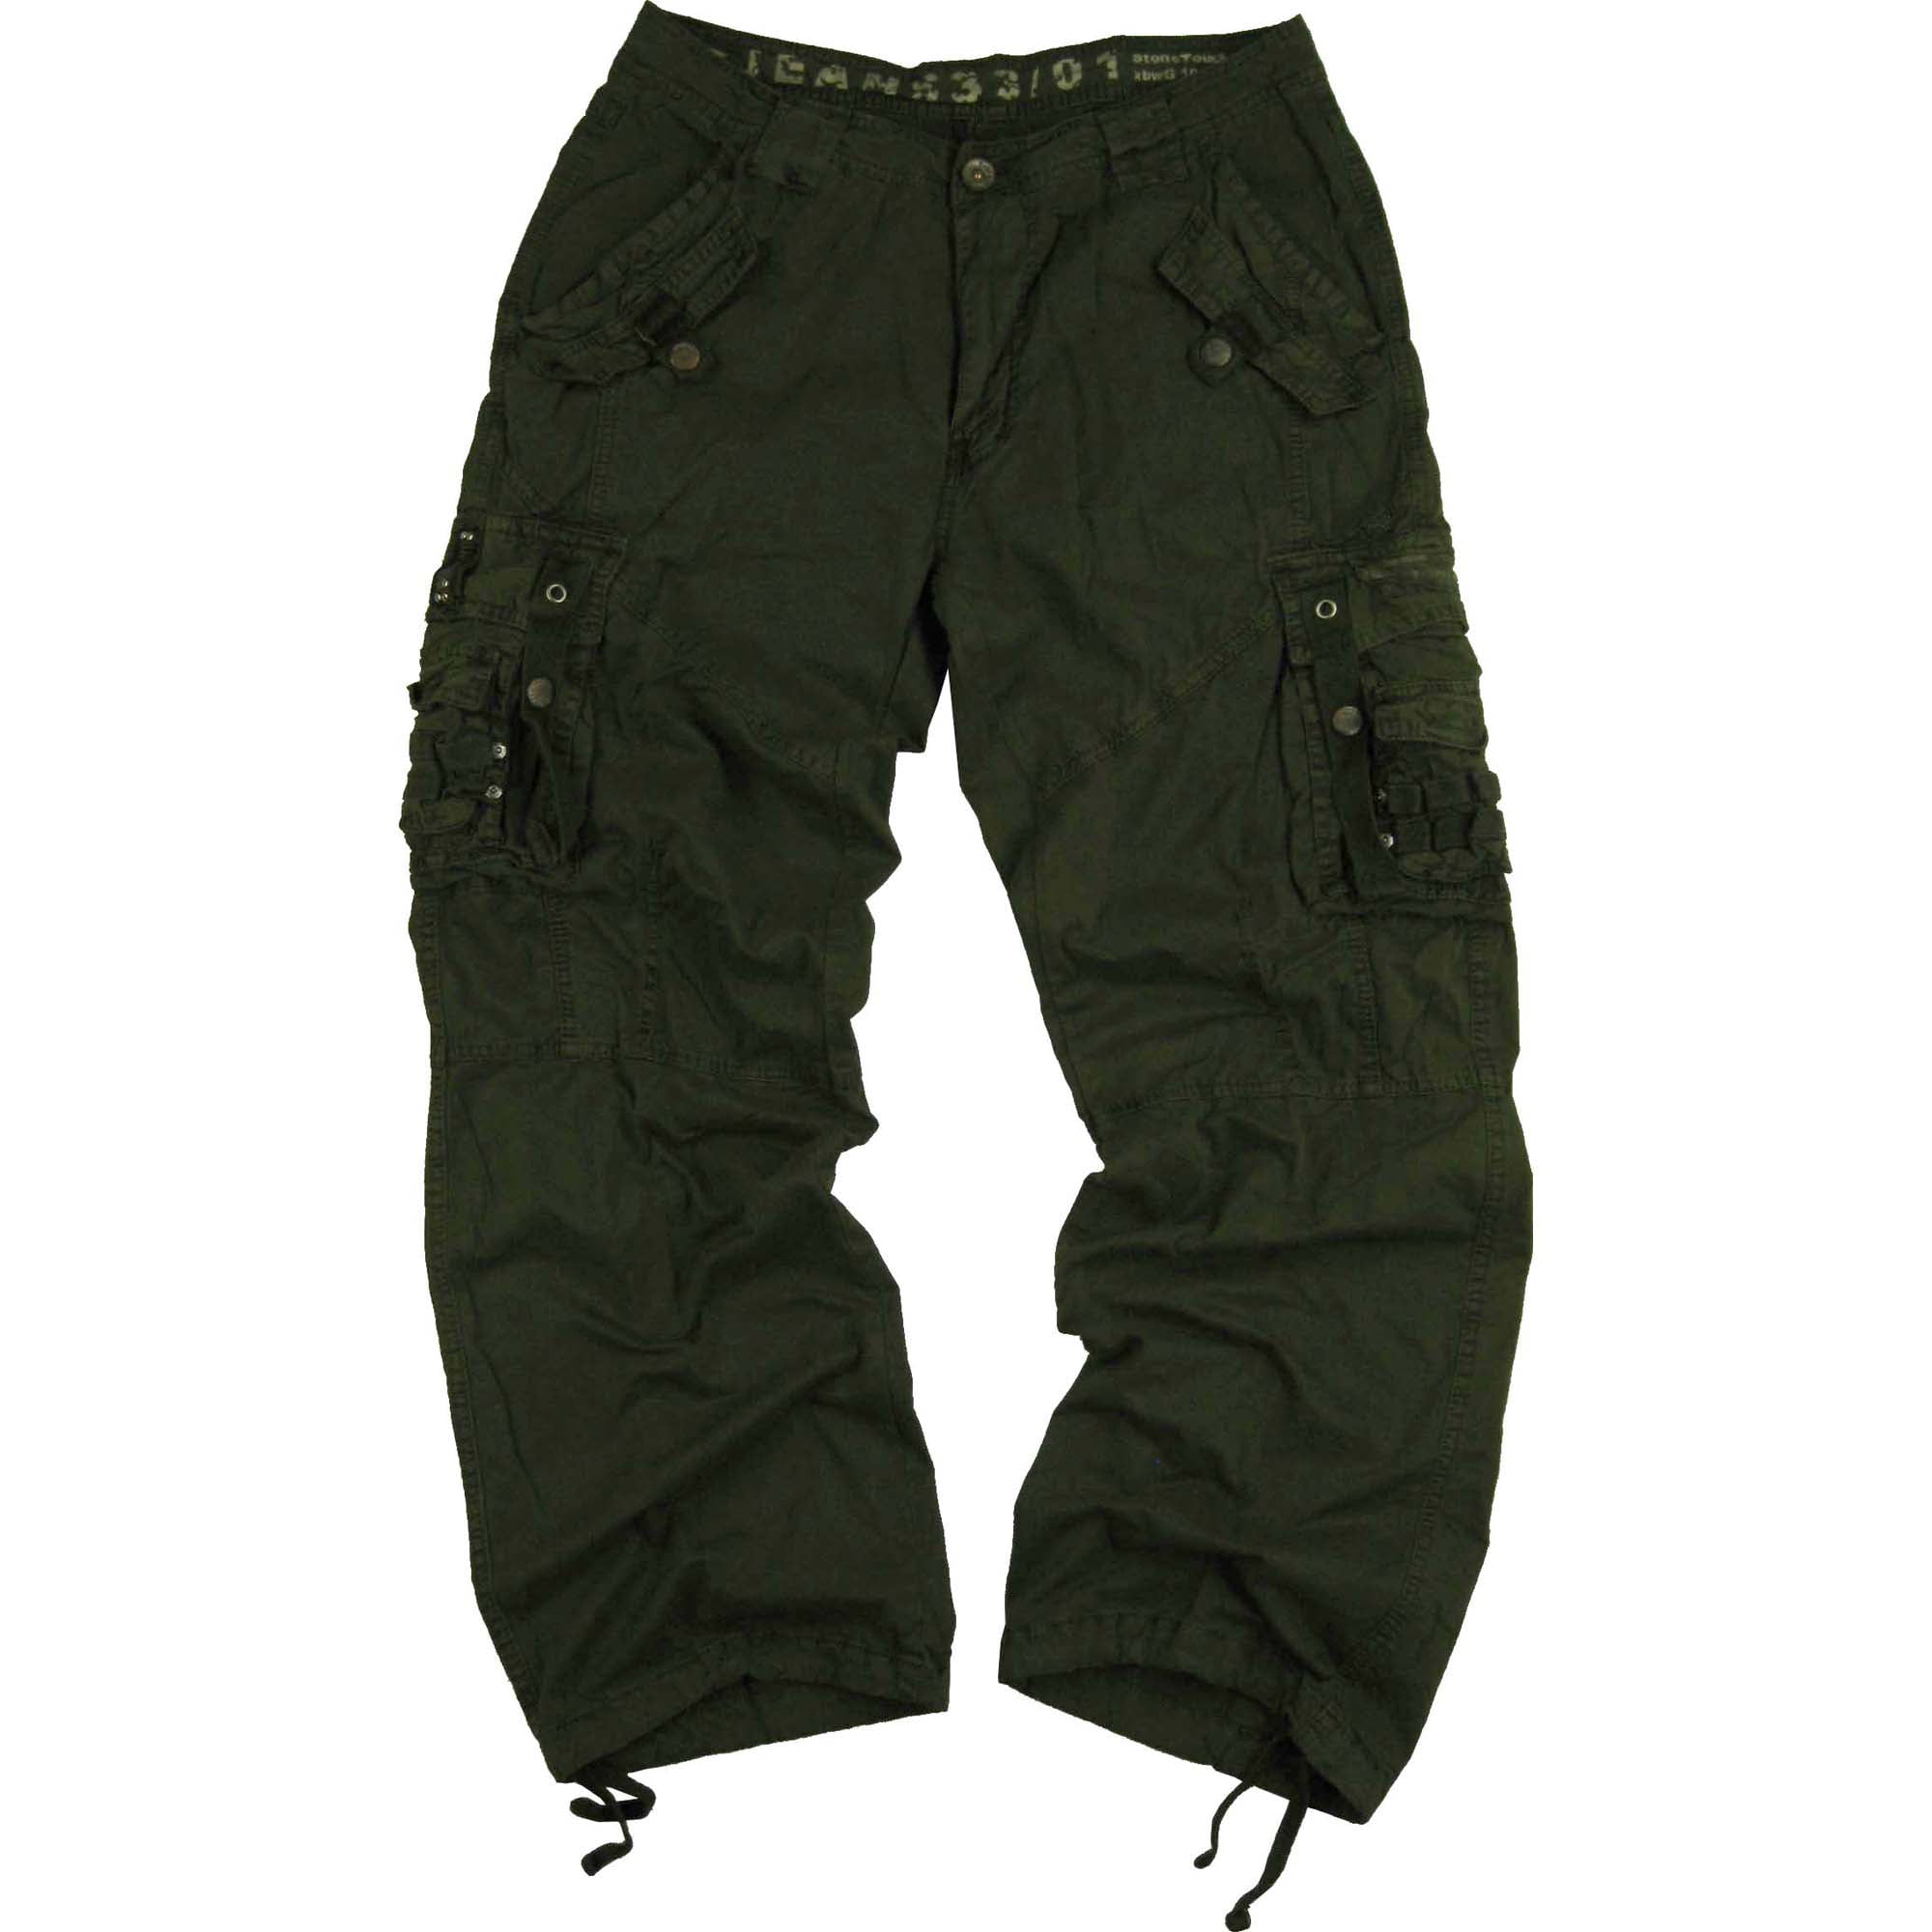 Men's Military Cargo Pants Plus Size 44x32 D.Olive #12211 - Walmart.com